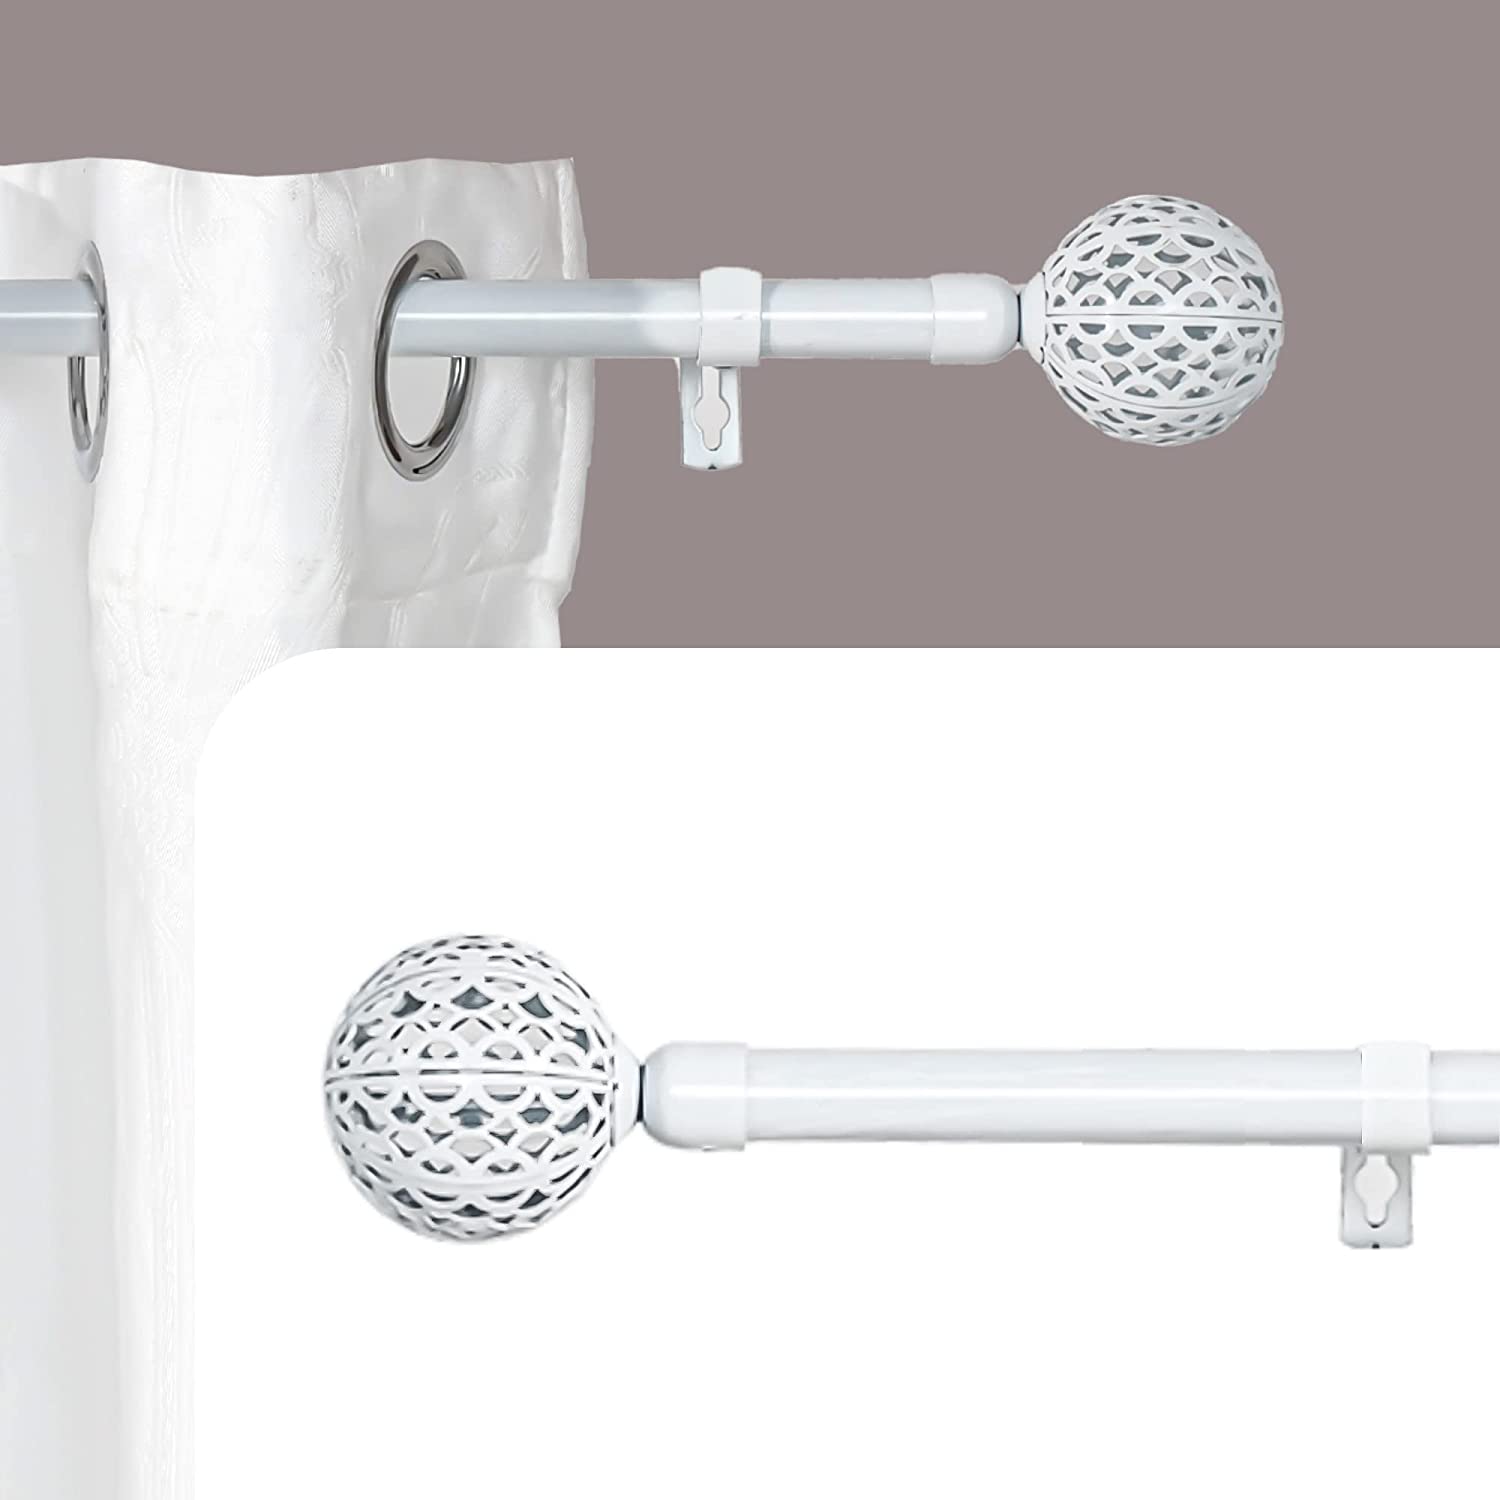 Barra extensible ajustable de aluminio para baño, ropero, armario y cocina.  Fácil montaje